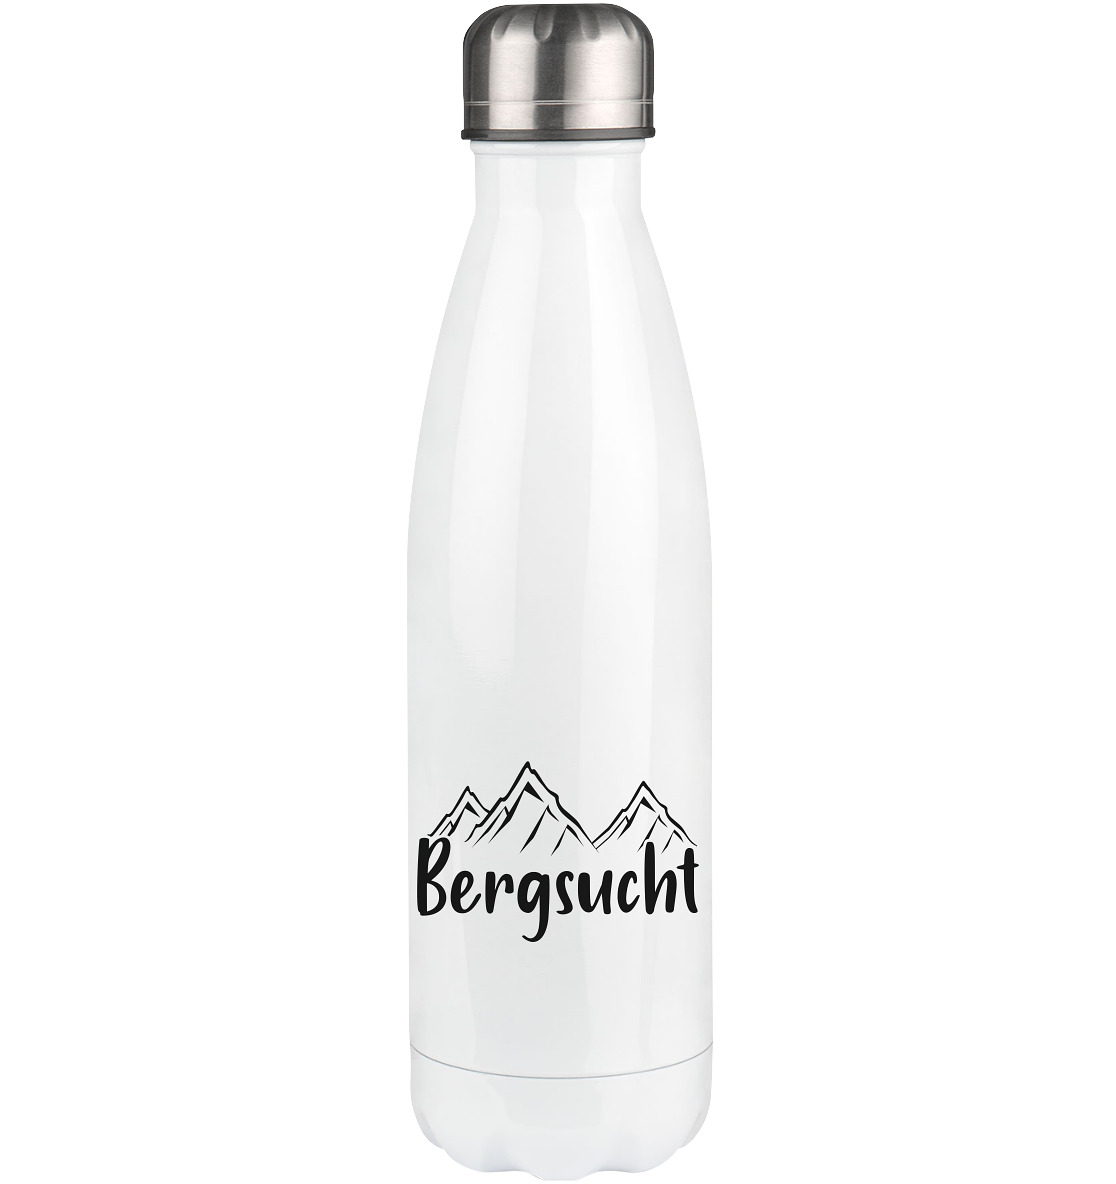 Bergsucht - Edelstahl Thermosflasche berge klettern 500ml